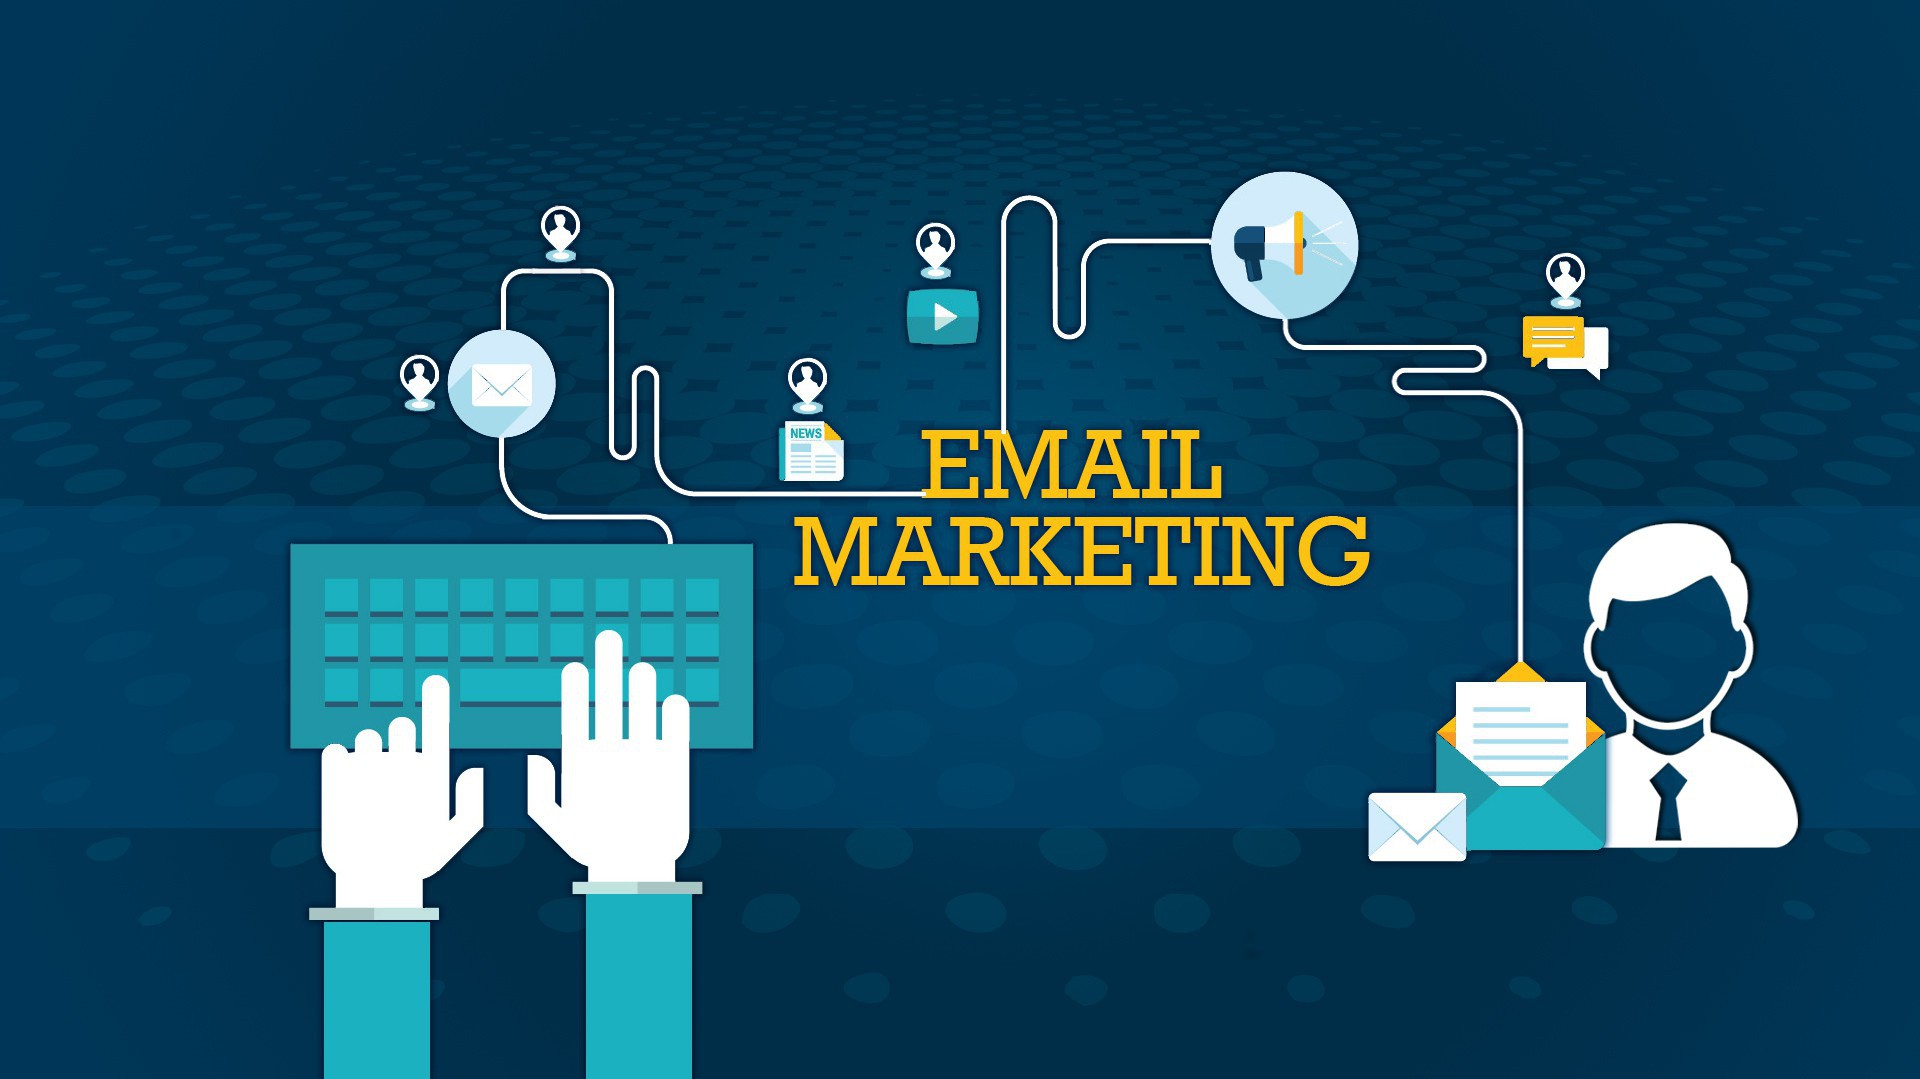 Lưu ý để lựa chọn nhà cung cấp email marketing tốt nhất cho doanh nghiệp